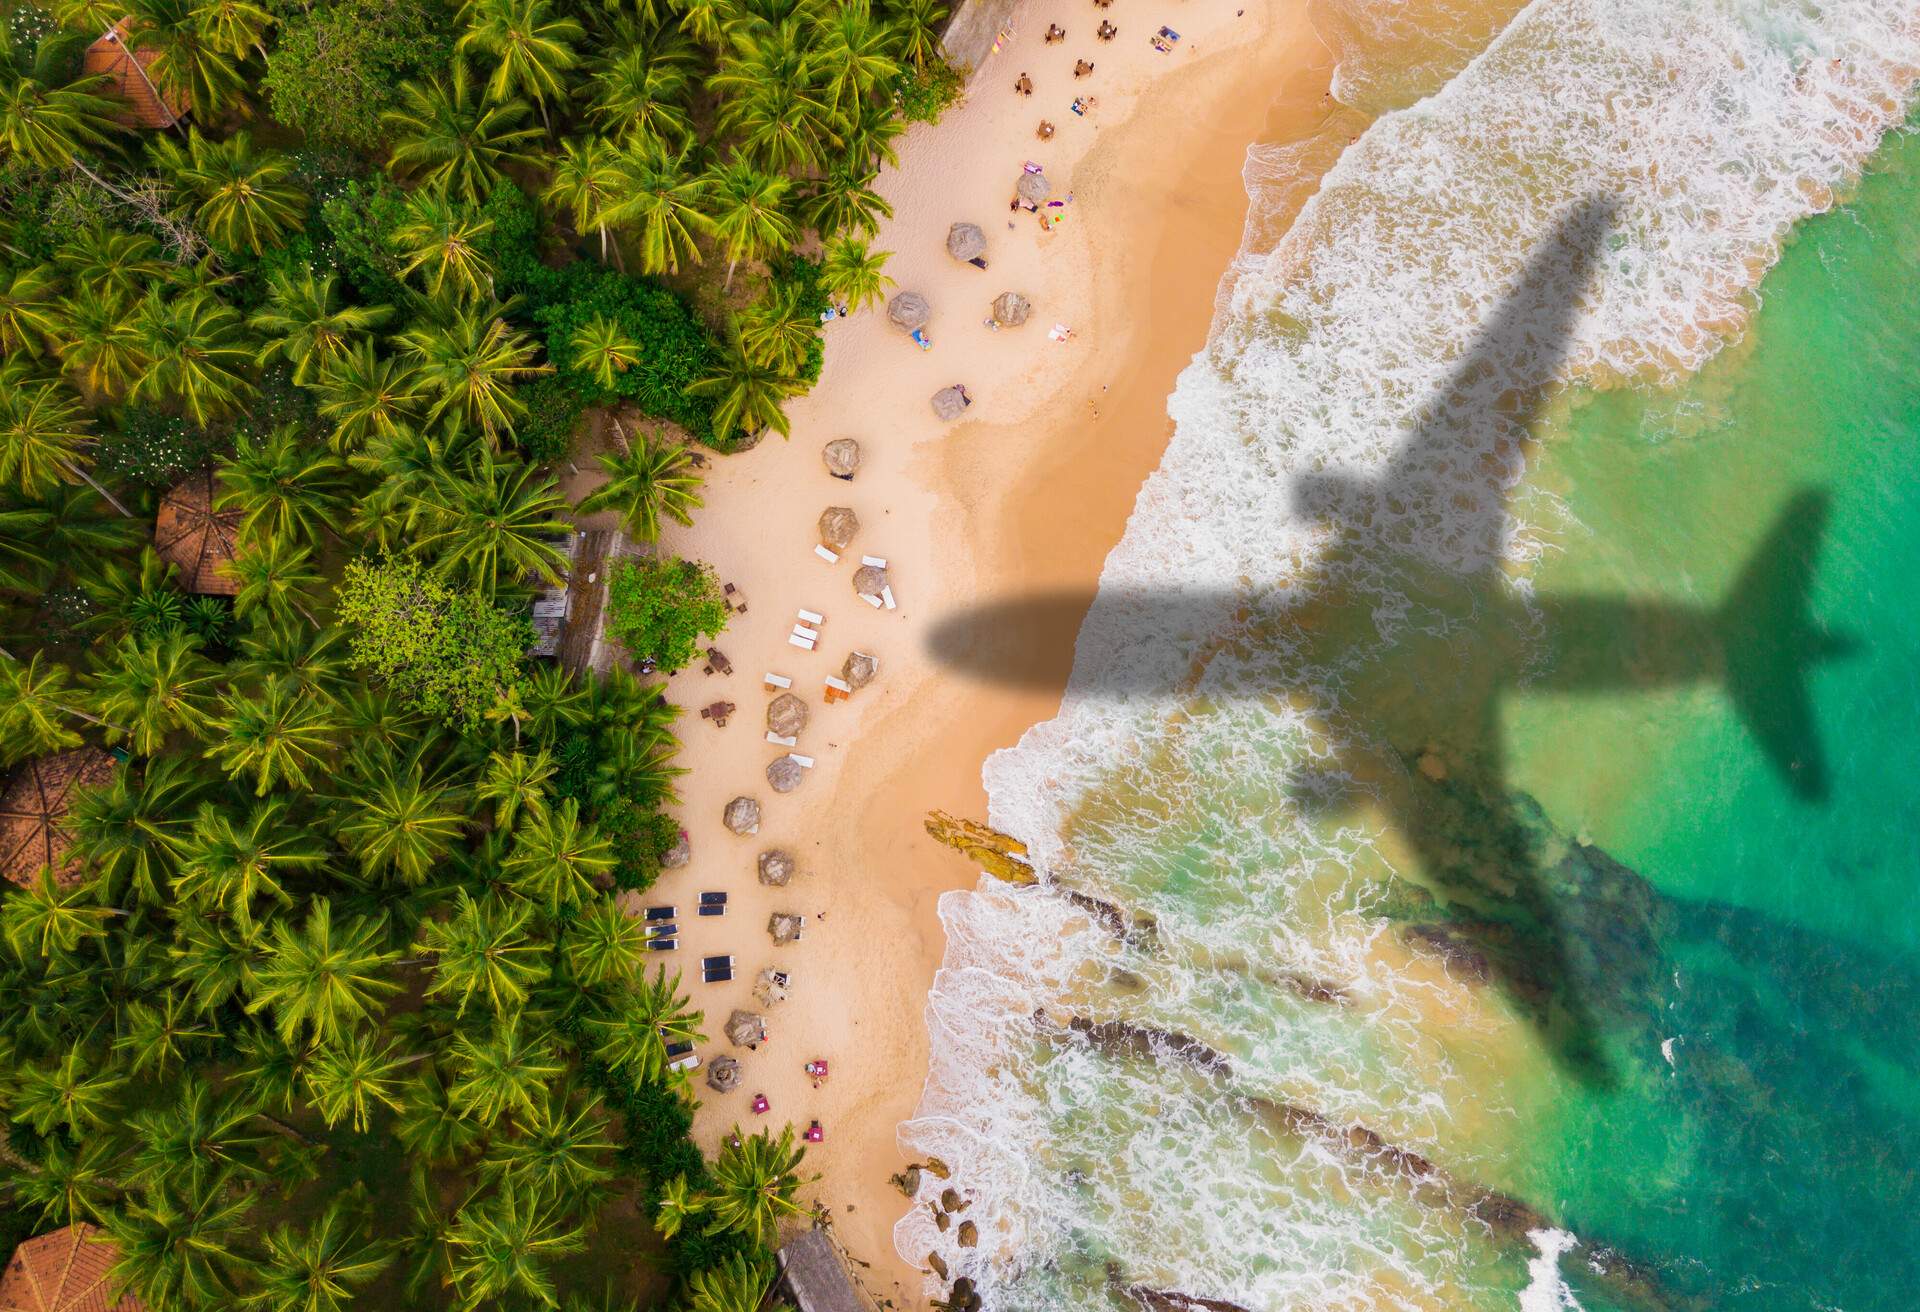 An airplane's shadow on a lush green golden beach.